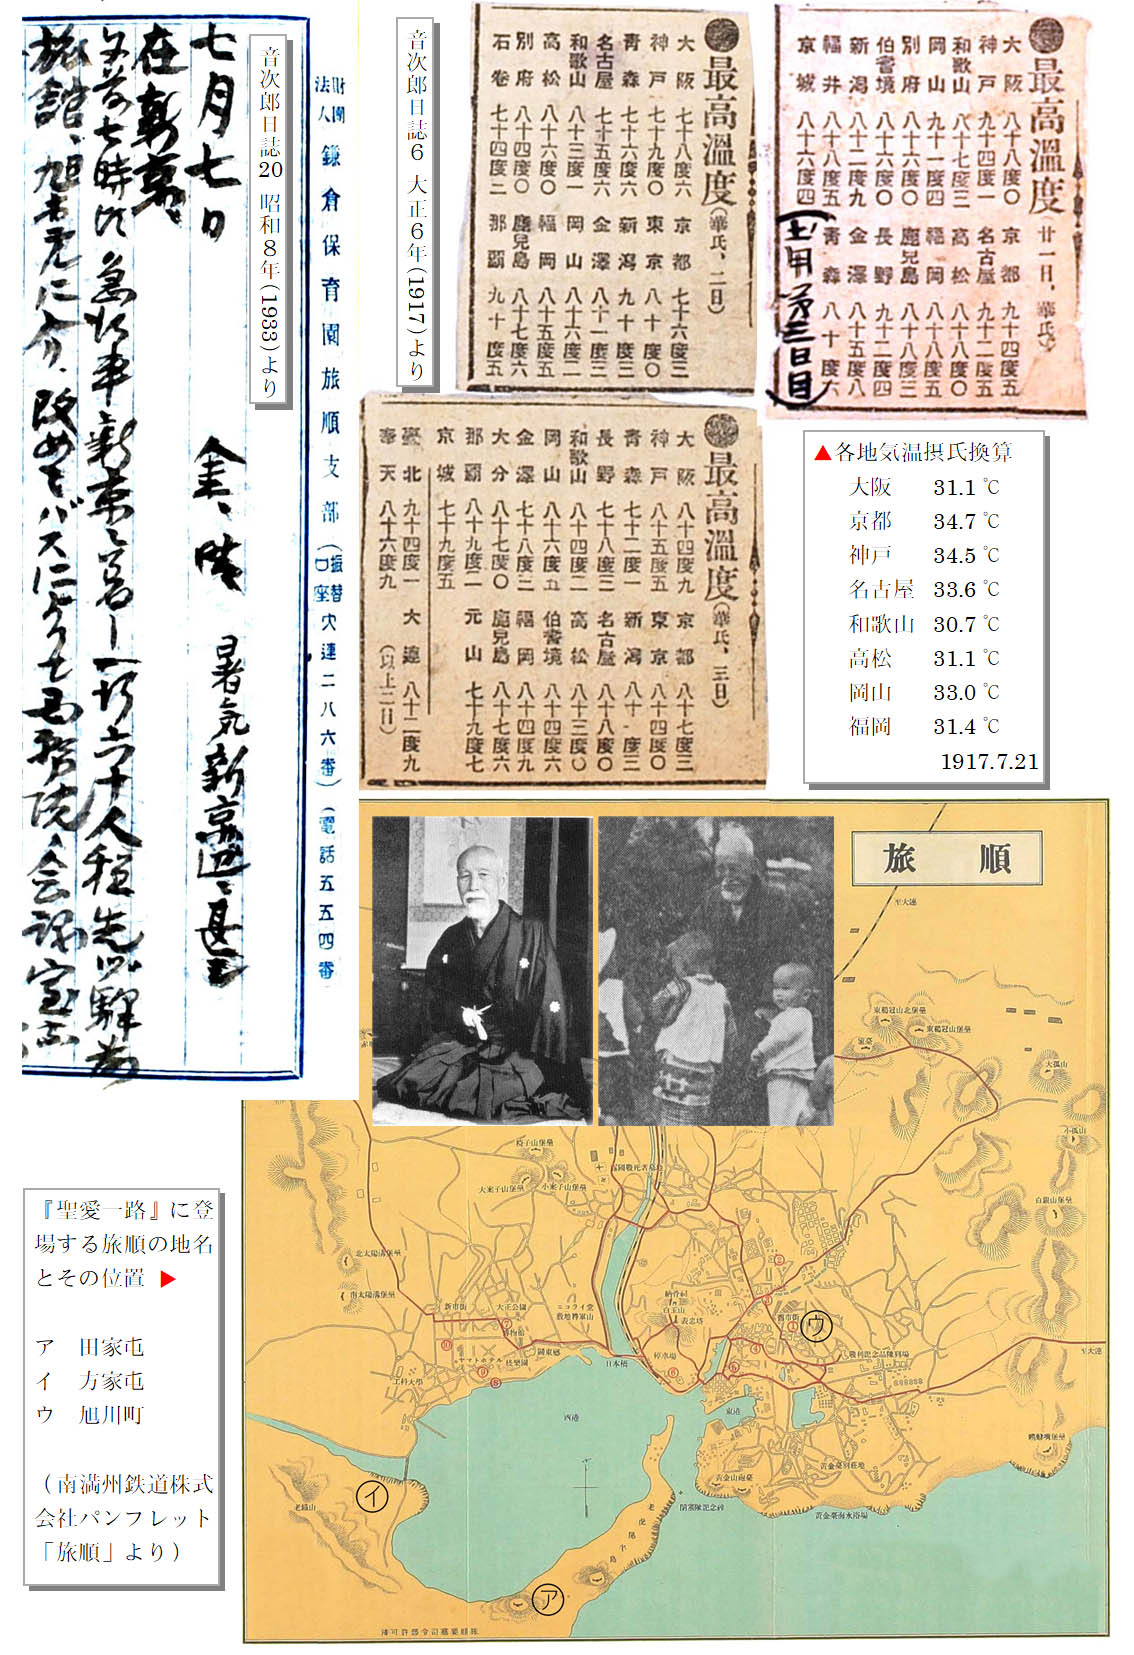 左上の画像は「音次郎日誌20 昭和8年(1933)」の引用。7月7日 金・晴　暑気新京辺甚し　在新京……。上中央と右は音次郎日誌6 大正6年(1917)に切り抜かれていた新聞記事で「●最高気温」と書かれている。表示は華氏で、百度近い個所もある。1917.7.21の各地気温を摂氏換算すると、大阪 31.1℃、京都 34.7℃、神戸 34.5℃、名古屋 33.6℃、和歌山 30.7℃、高松 31.1℃、岡山 33.0℃、福岡 31.4℃となる。中頃には音次郎が和服を着て床の間の前に座っている写真と、鎌倉保育園の園庭で子供と遊んでいる音次郎の写真が並んでいる。下段には旅順の地図がある。南側が大きな入江になっており、『聖愛一路』に登場する田家屯、方家屯、旭川町の位置が地図上に示されている。地図は南満州鉄道株式会社パンフレット「旅順」より引用した。